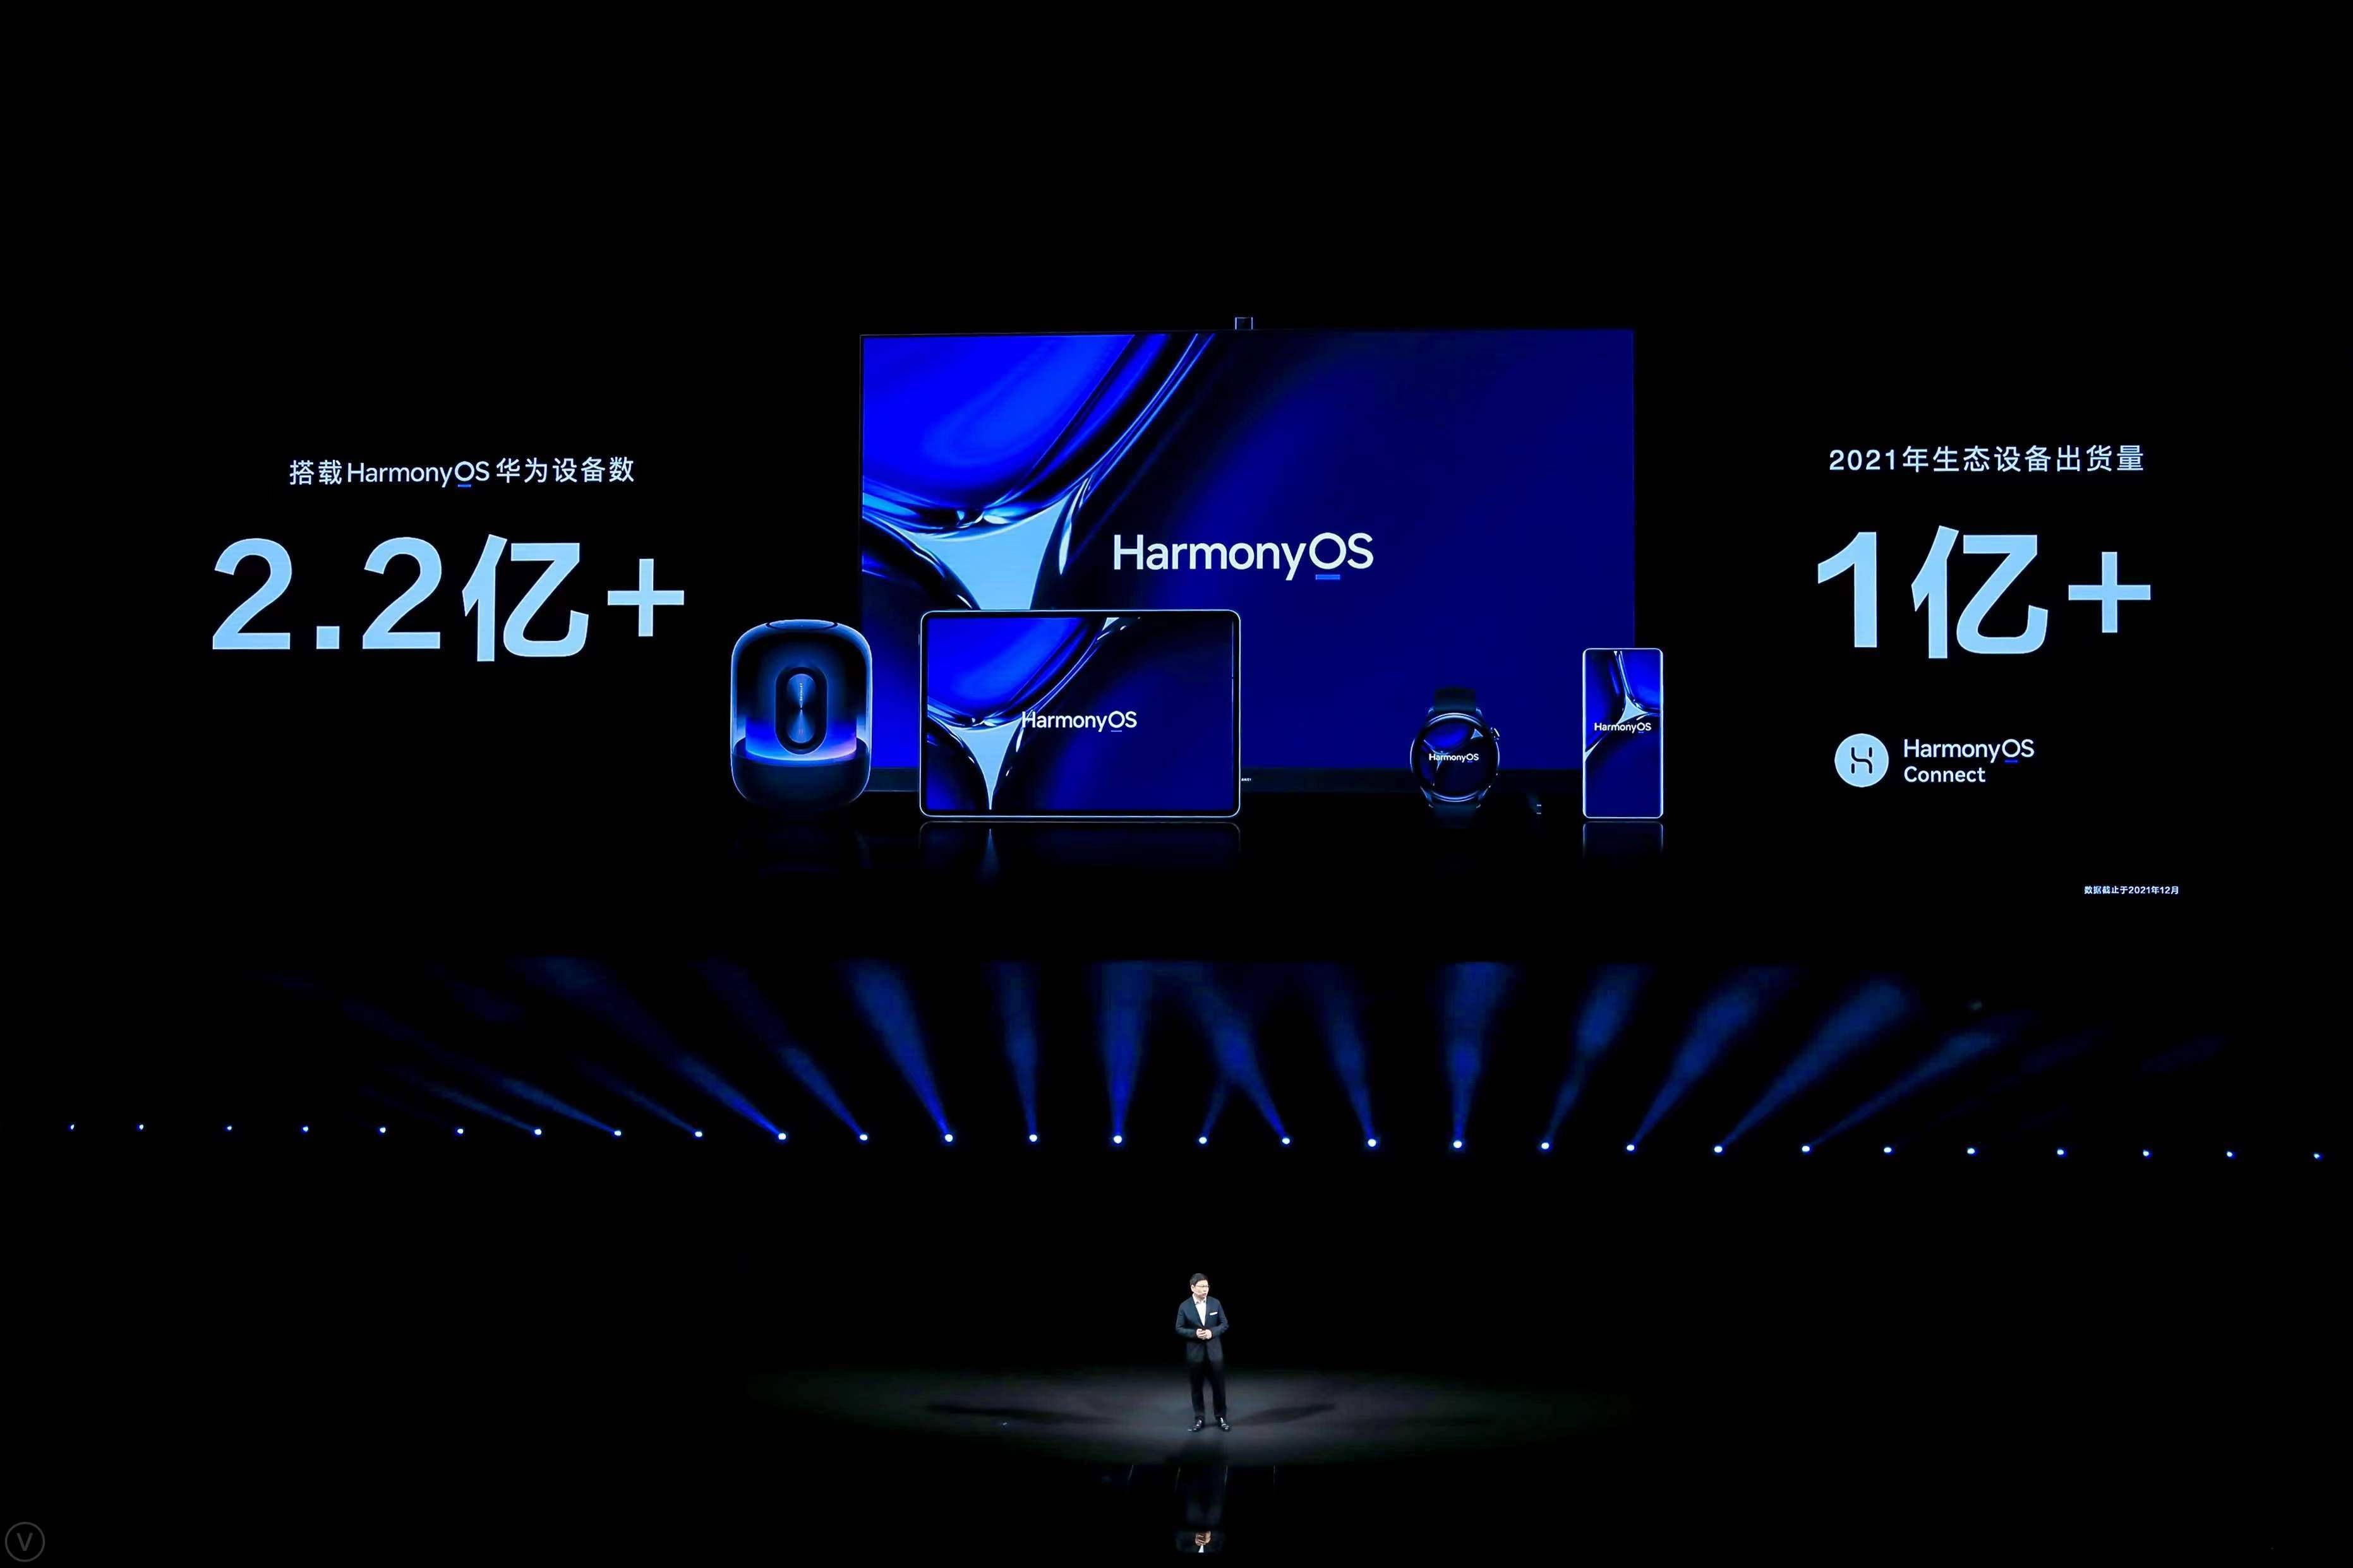 新华社|搭载华为鸿蒙OS设备数量超2.2亿